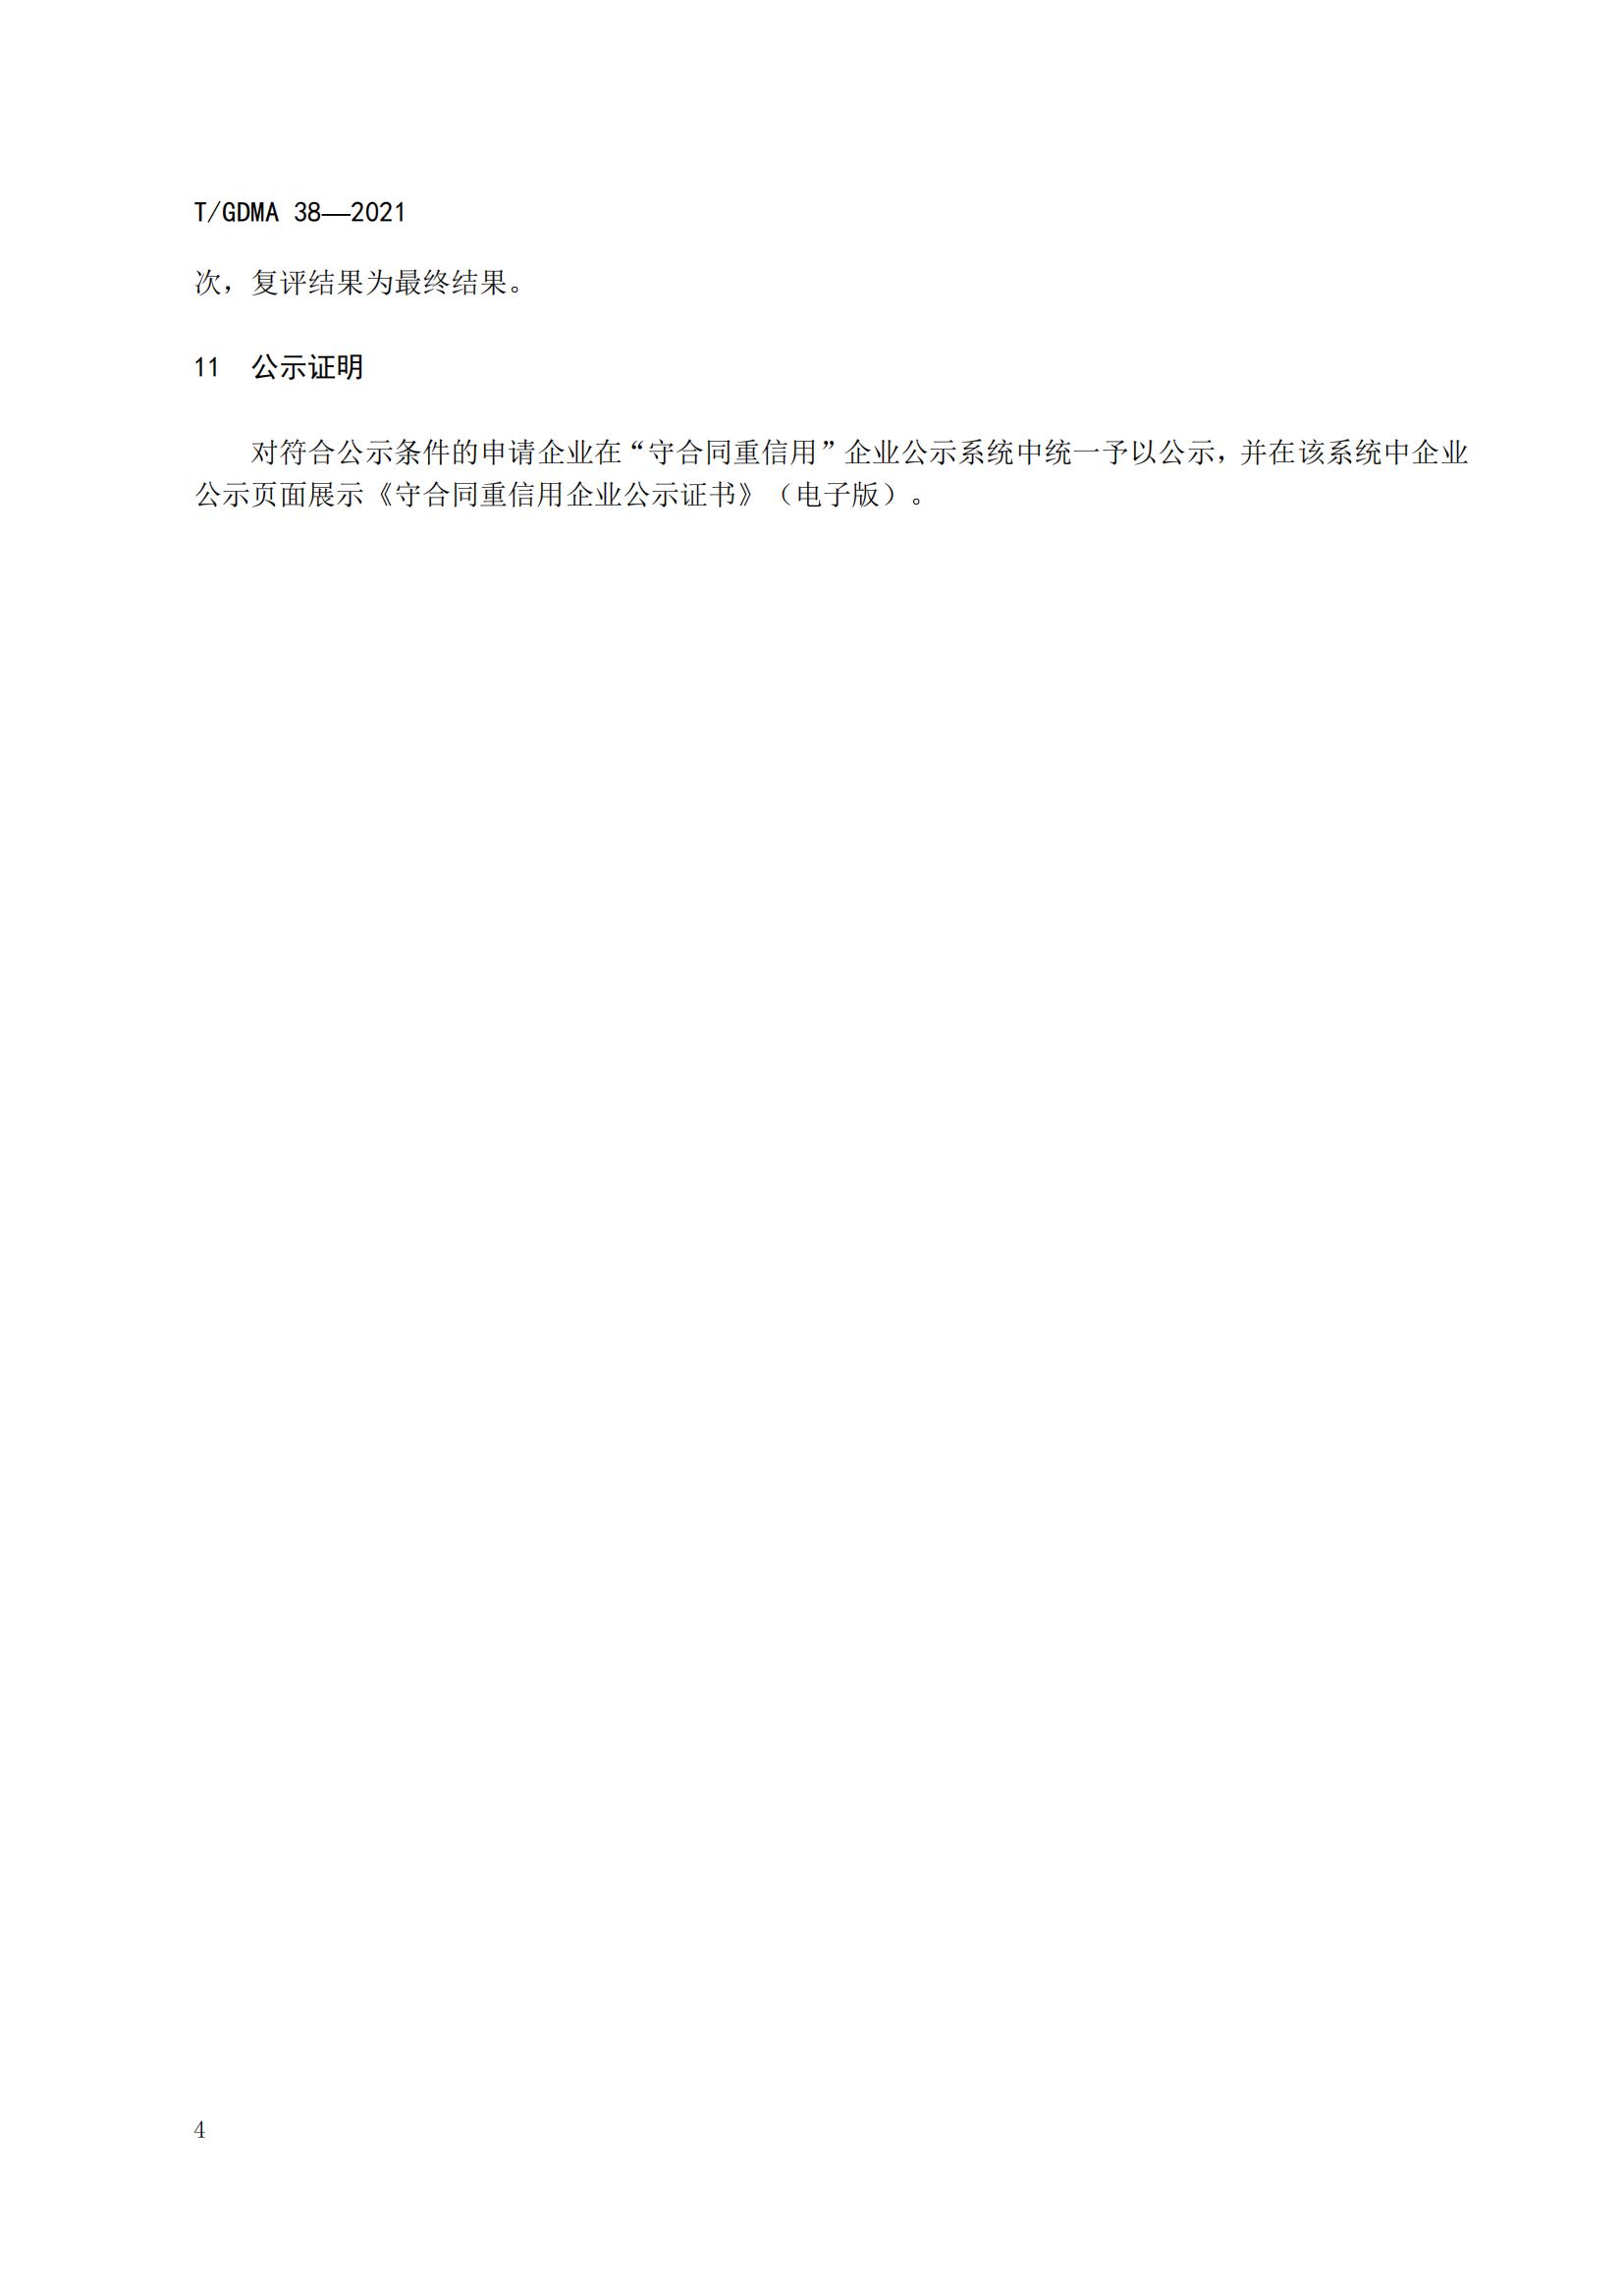 TGDMA 38 广东省守合同重信用企业等级评定规范-发布稿_07.jpg